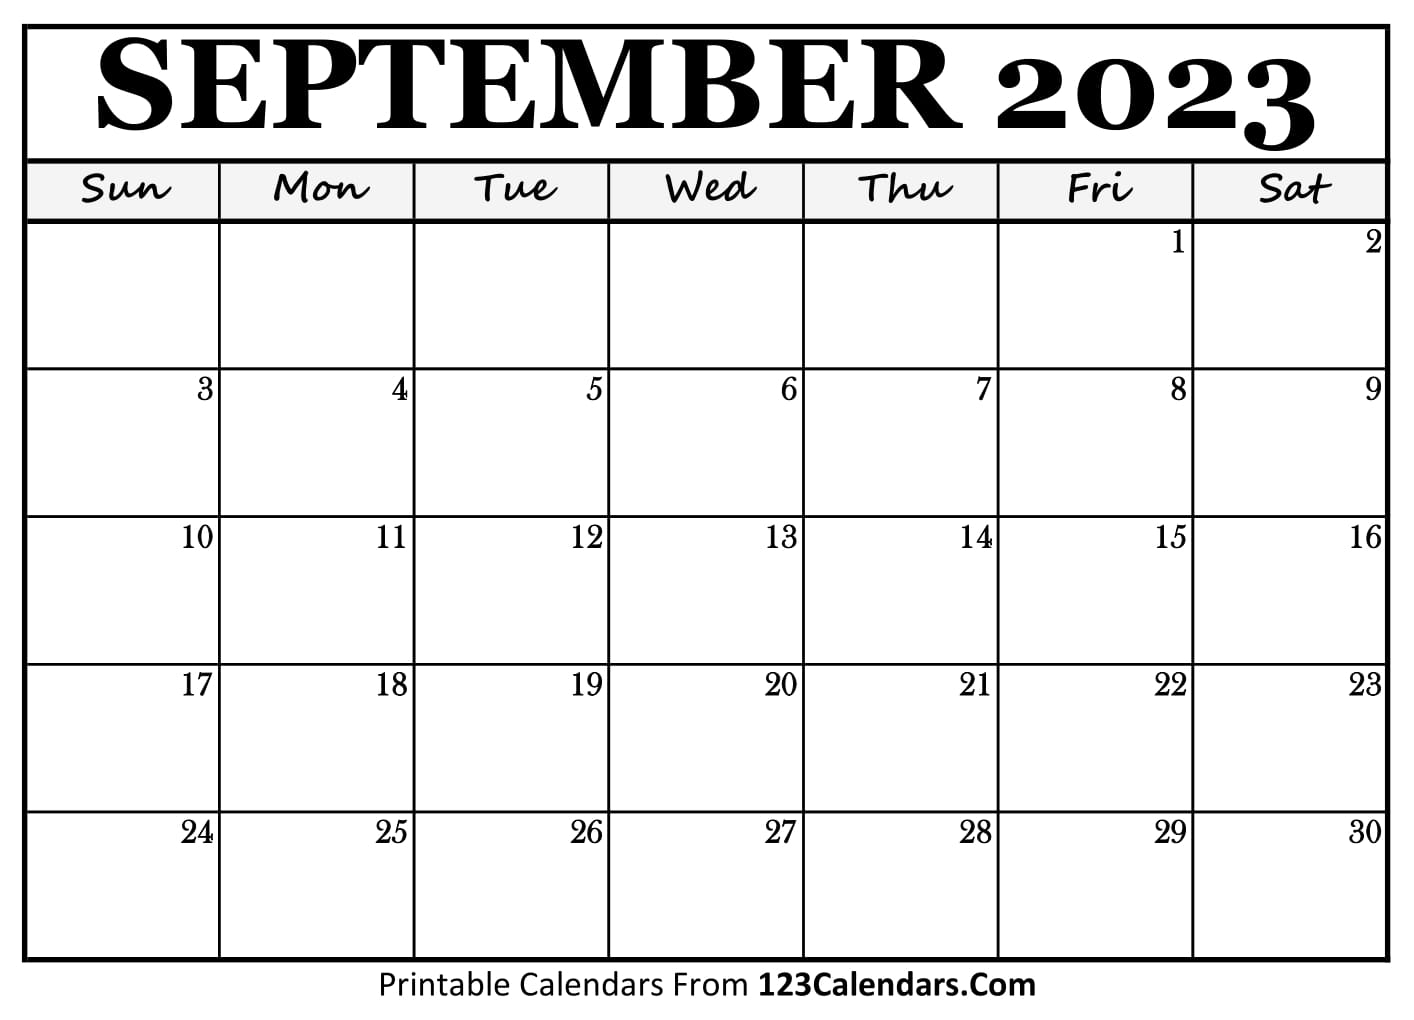 september-2023-calendar-123-get-calendar-2023-update